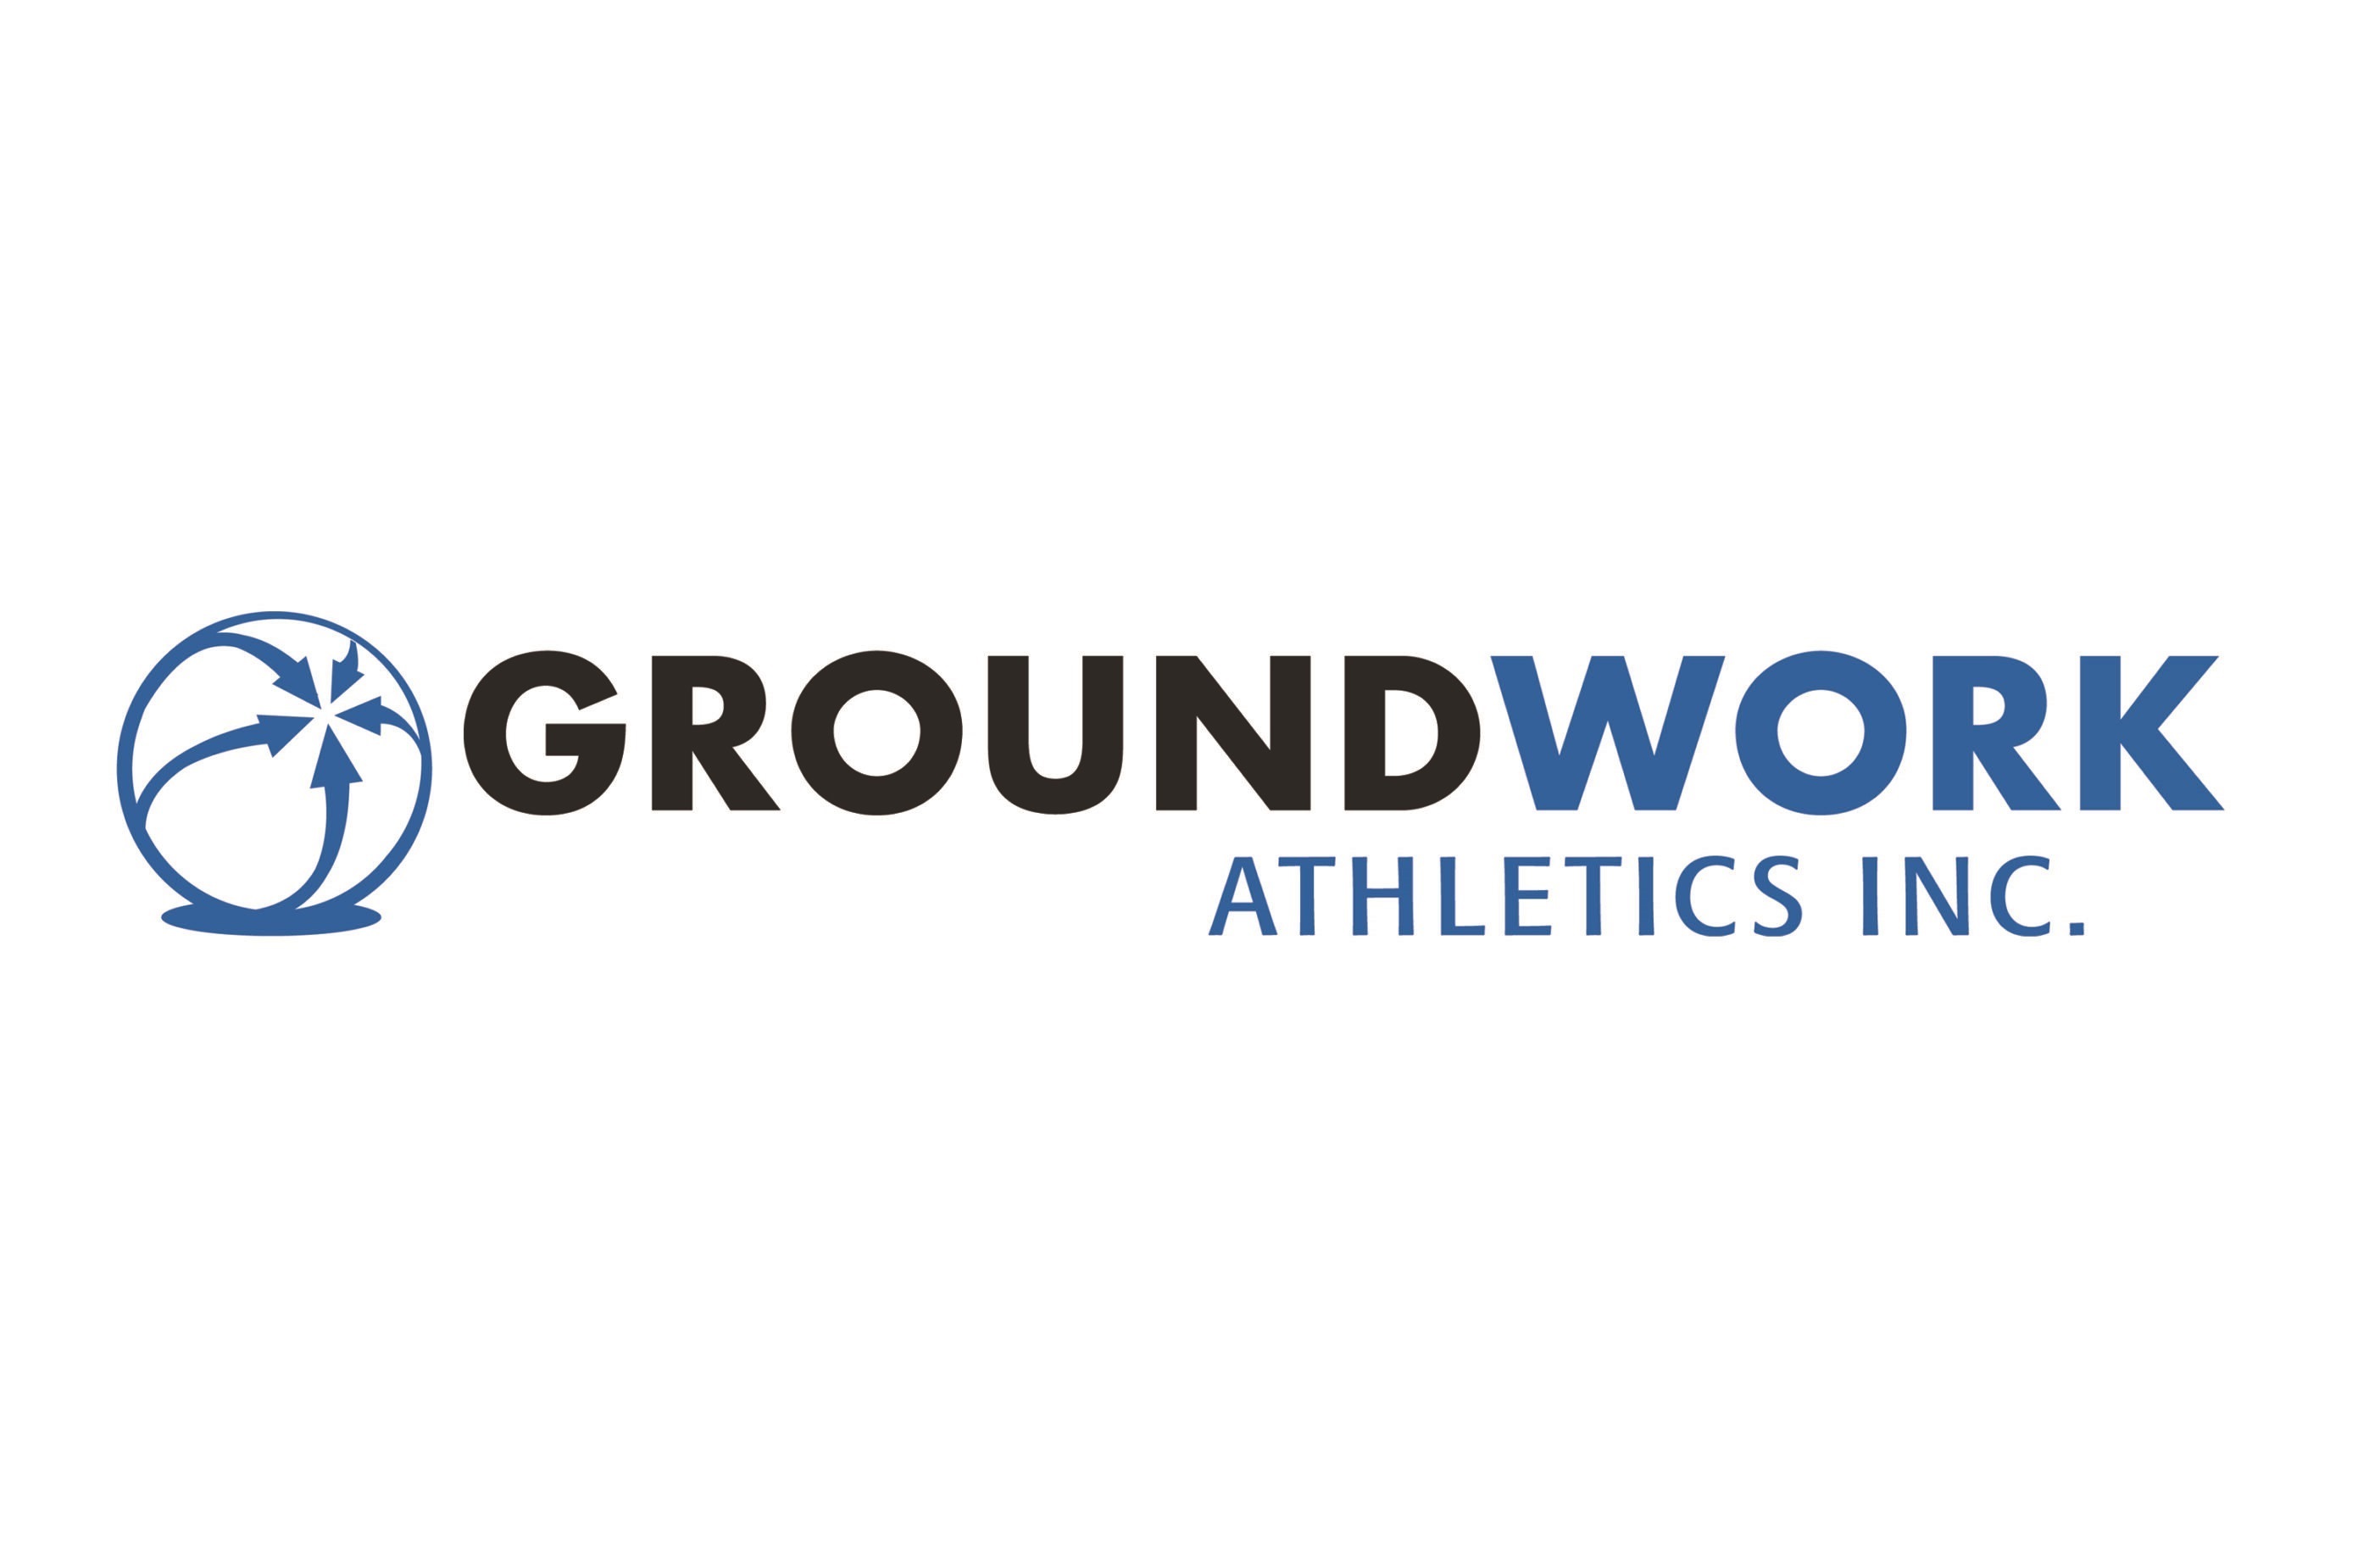 Groundwork Athletics